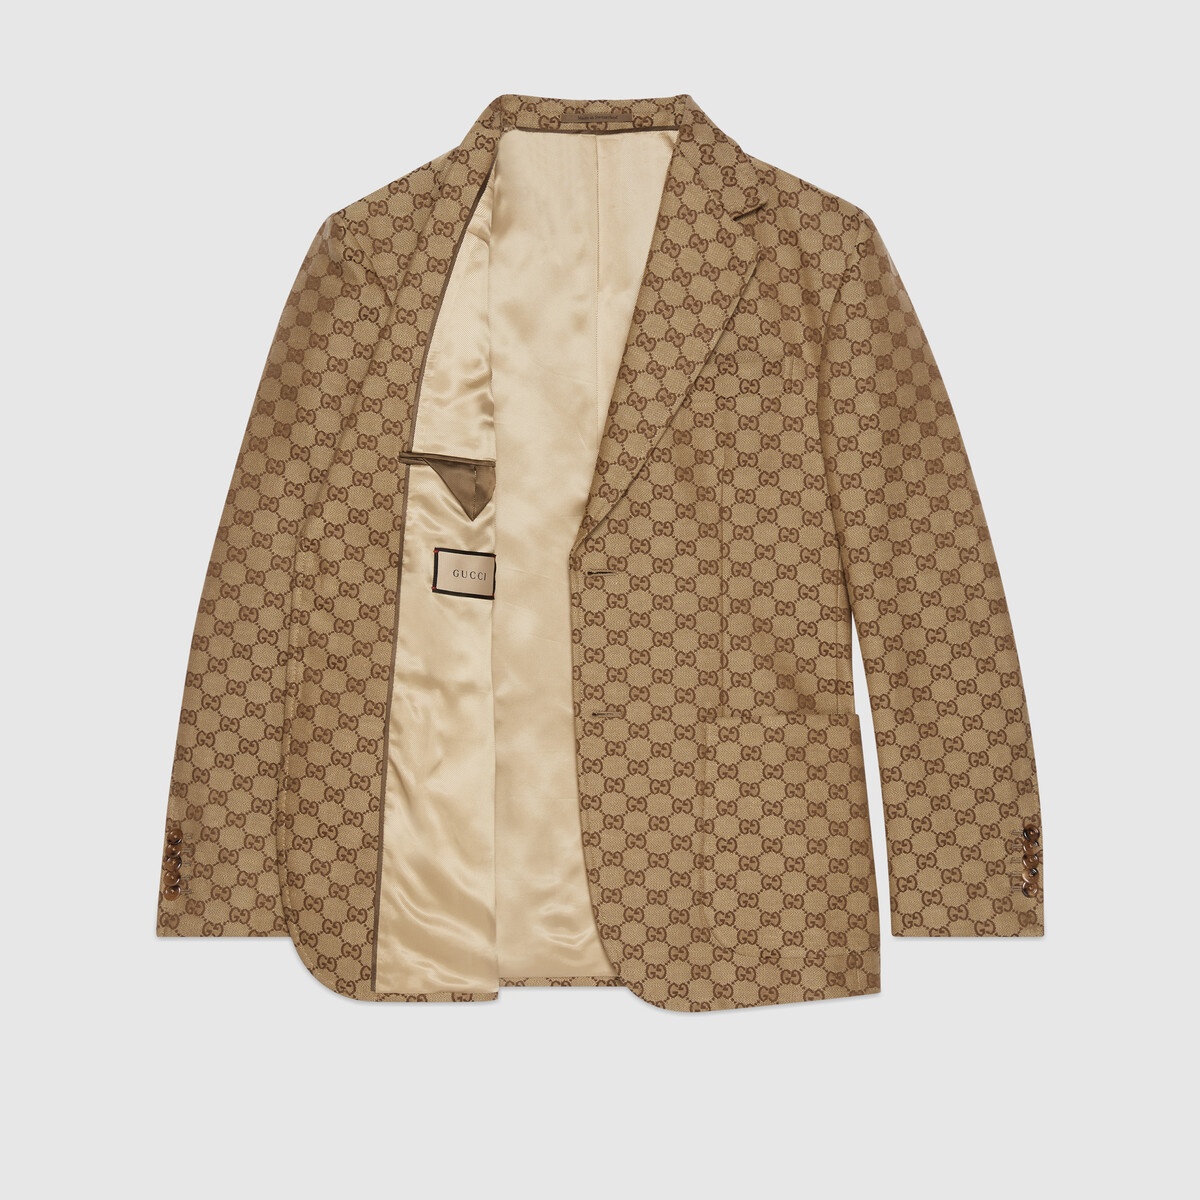 GG Supreme linen formal jacket - 7